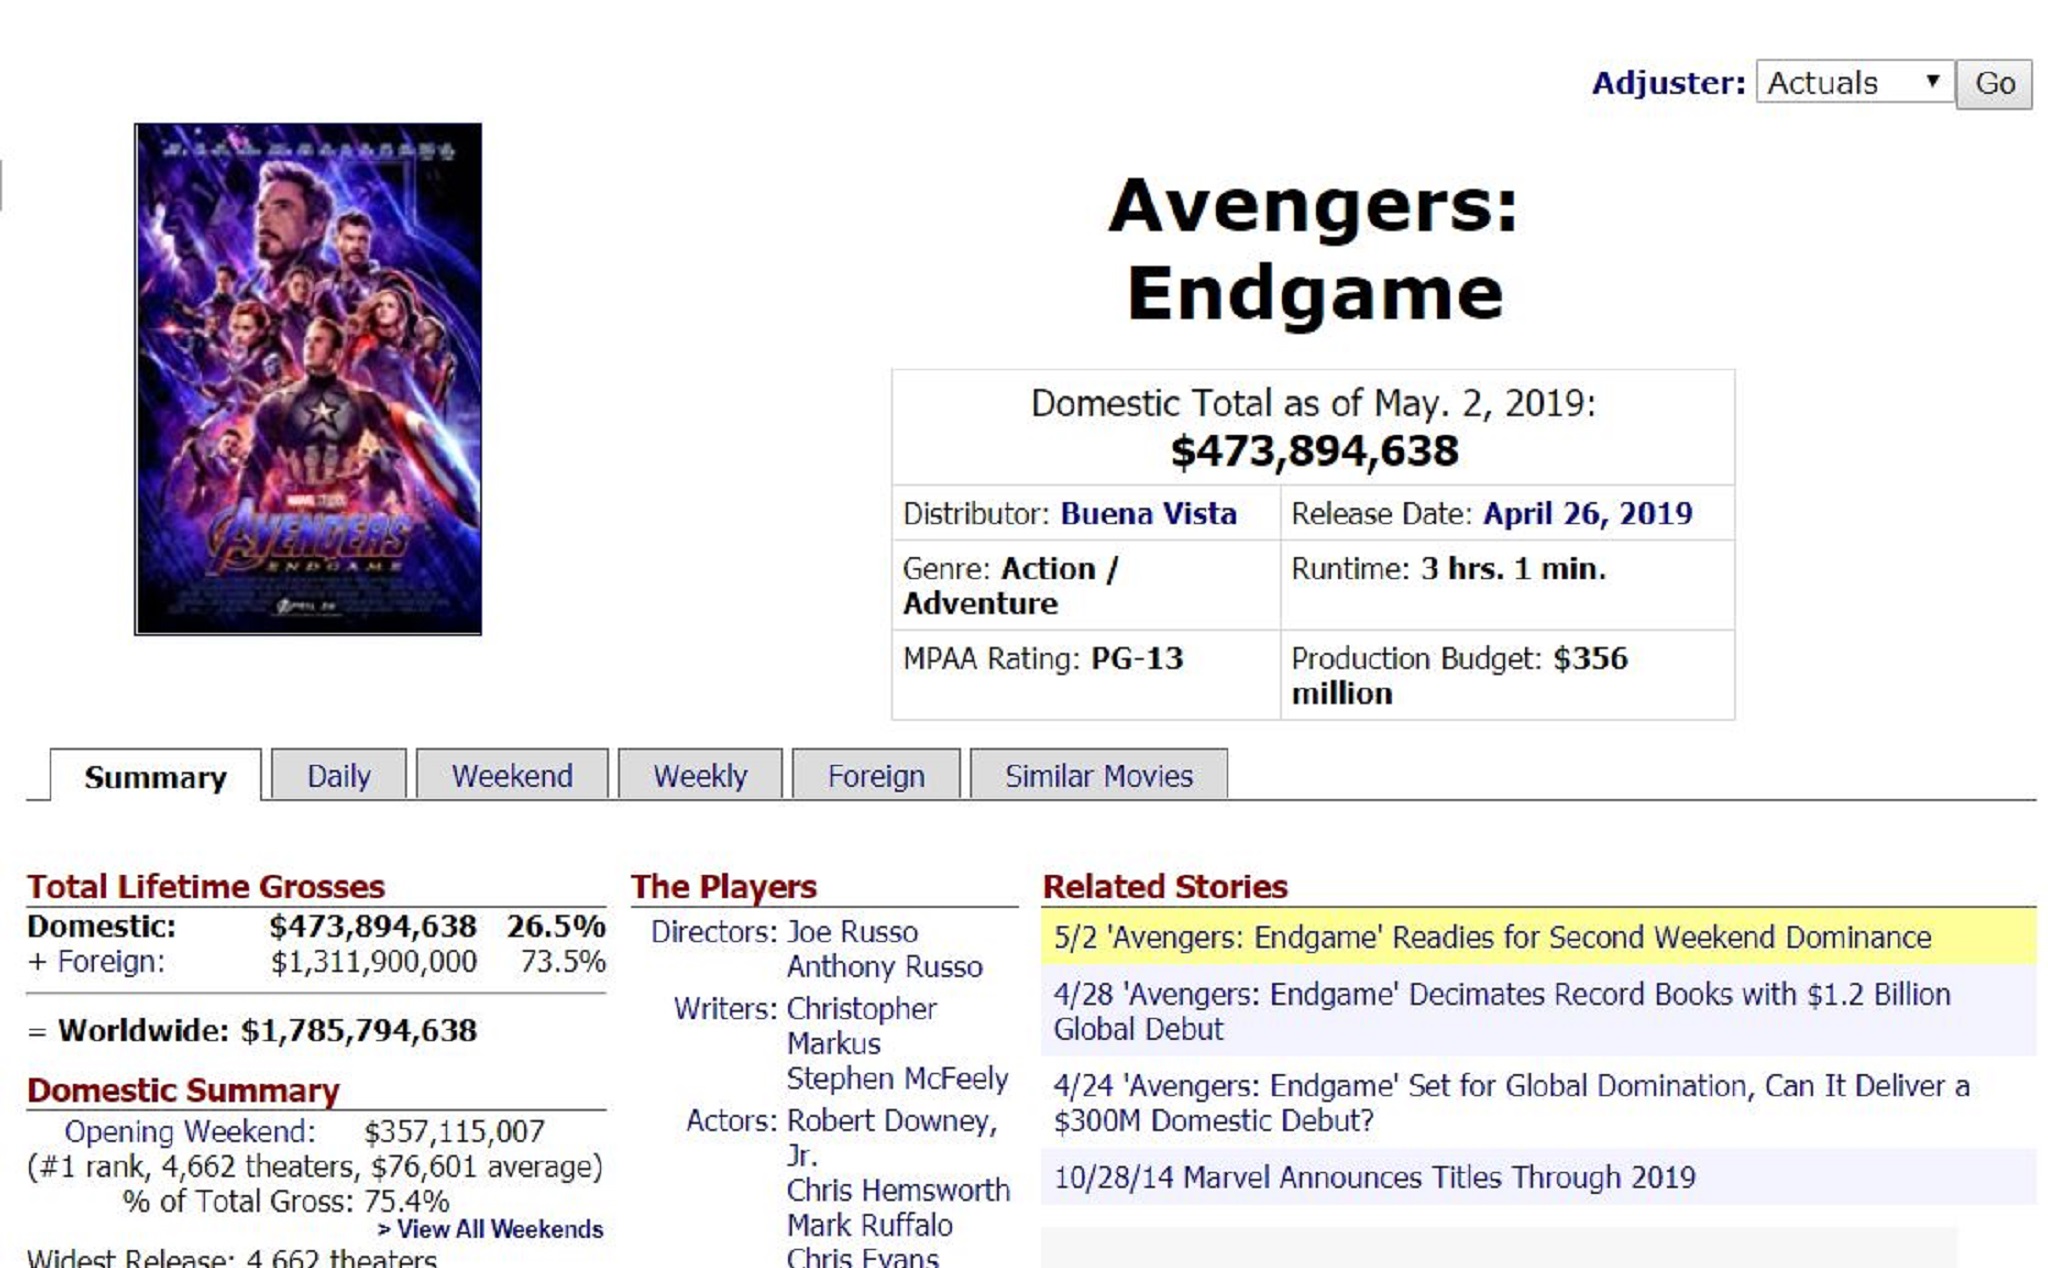 Endgame thu 1.8 tỷ toàn cầu và 10 triệu đô sau 1 tuần ở VN; là phim ăn khách nhất mọi thời đại